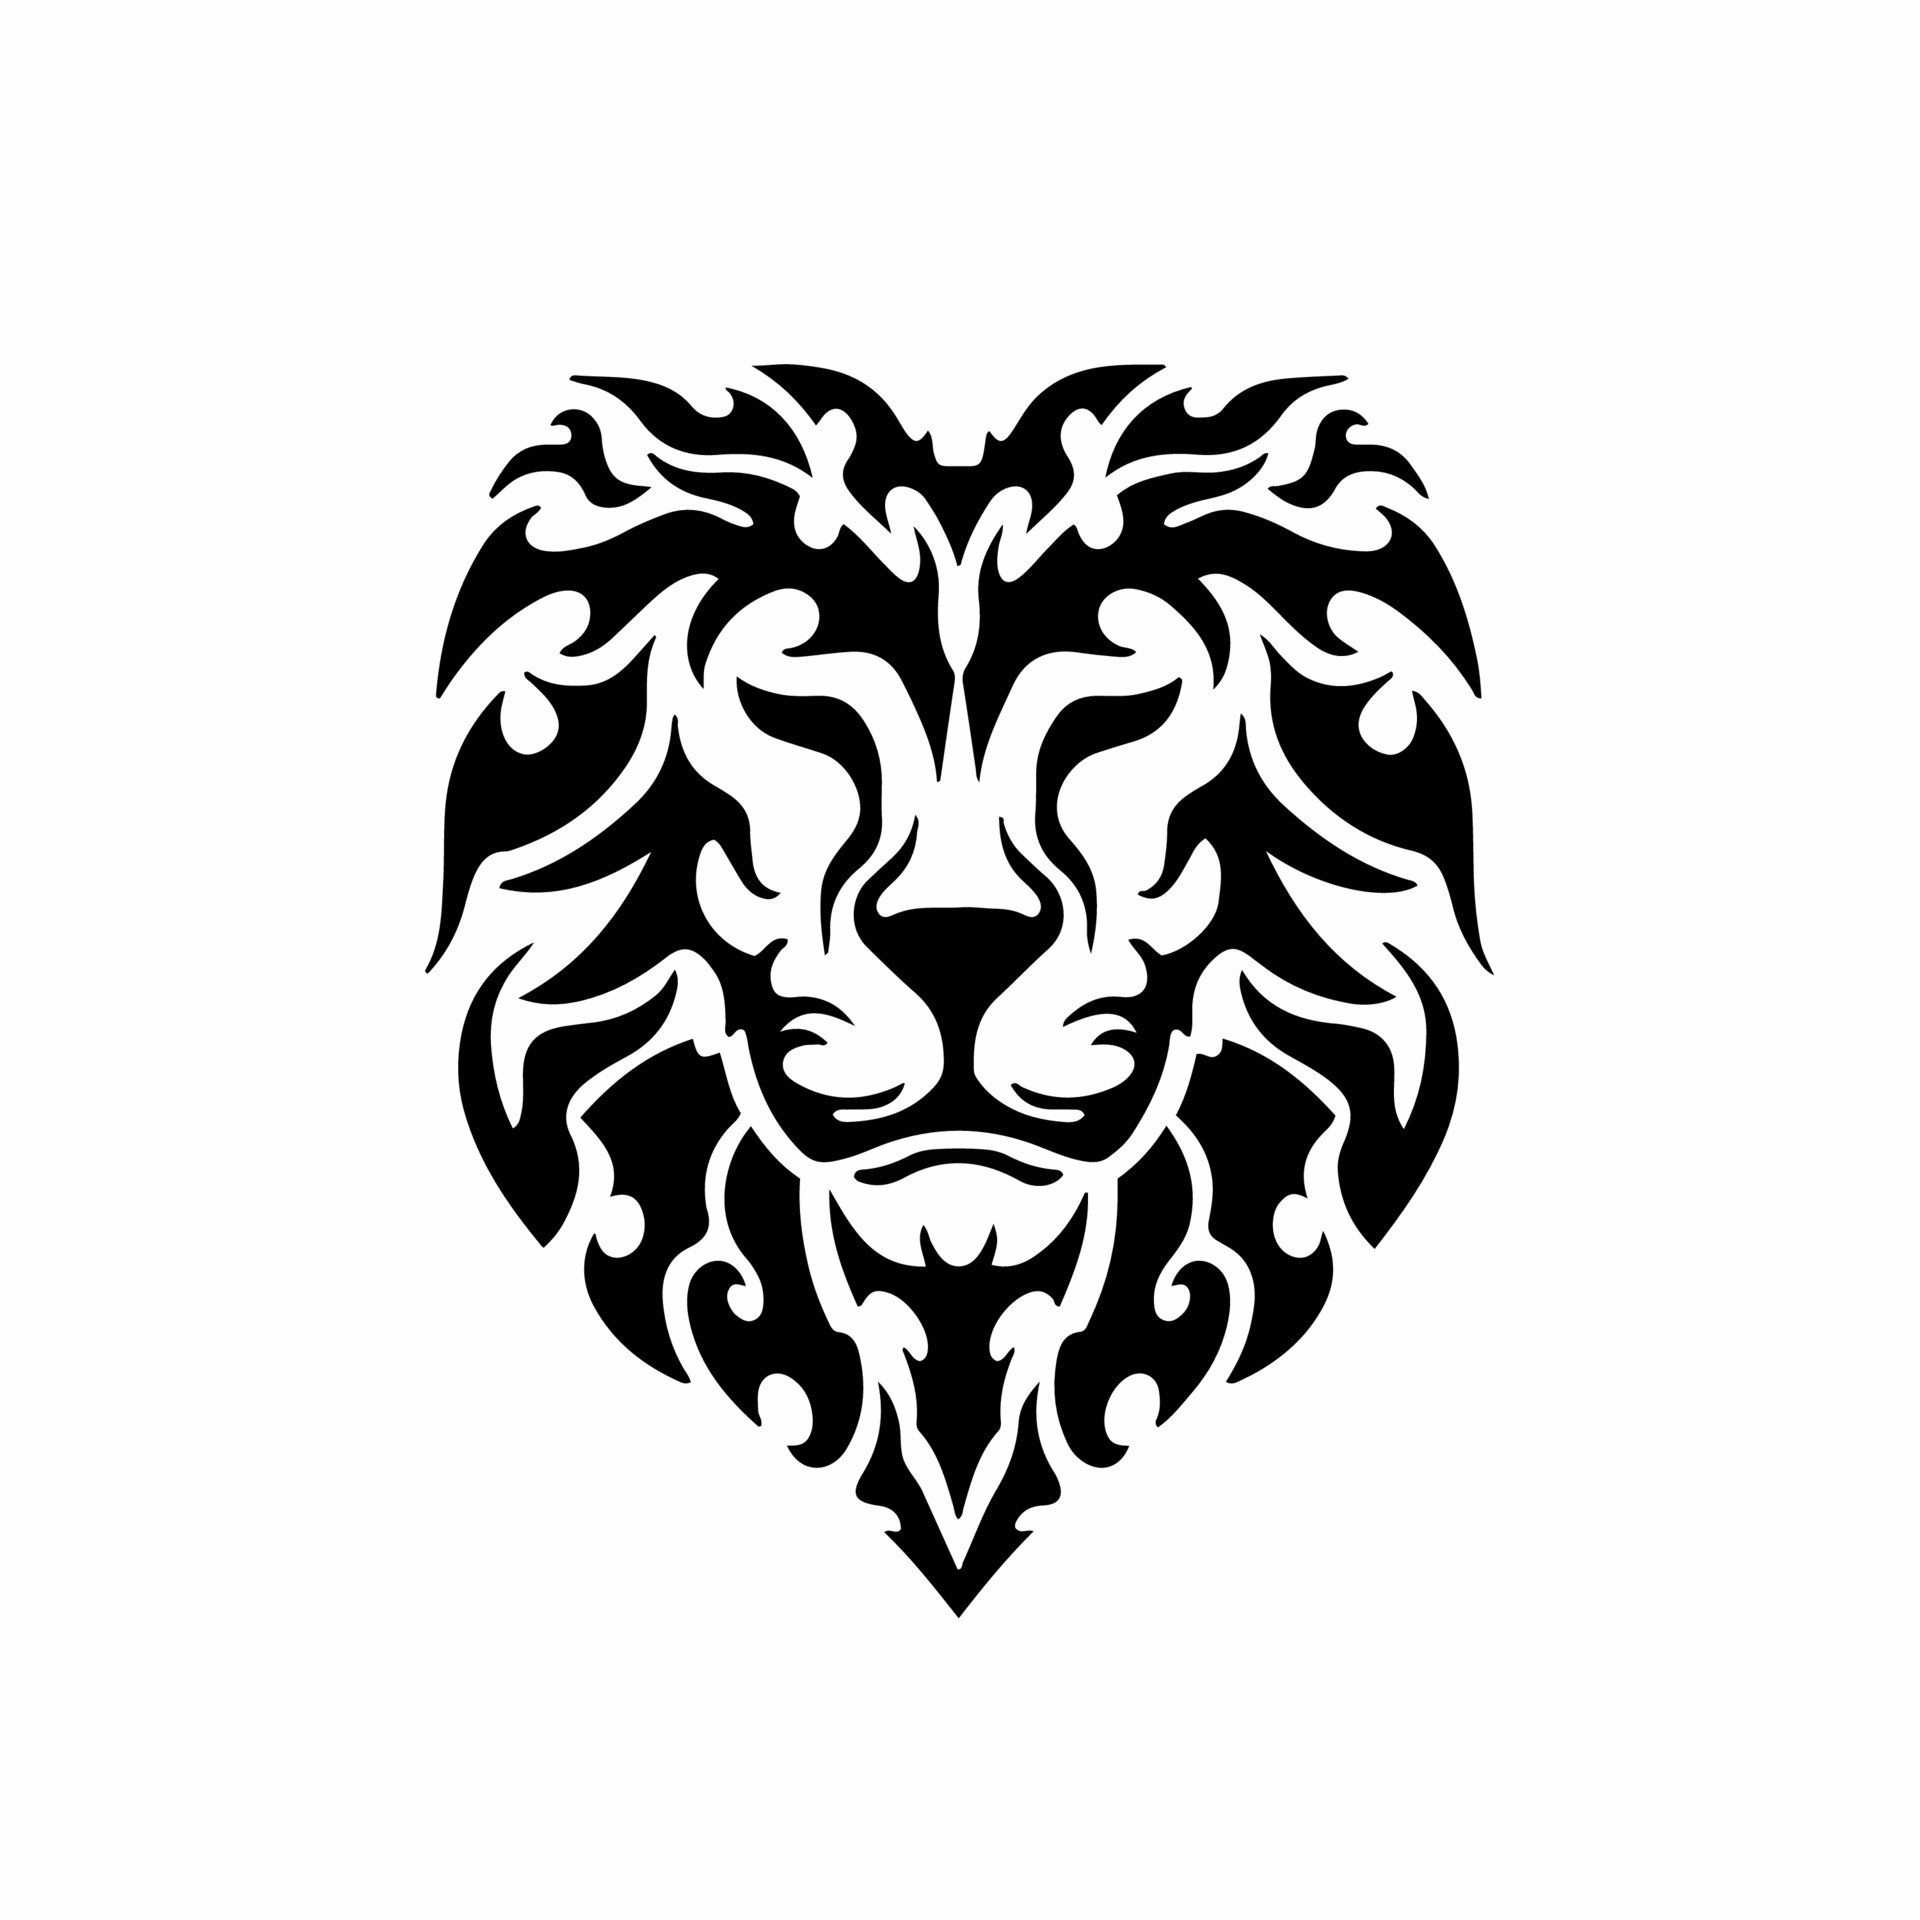 Tribal Lion Head Logo. Tattoo Design. Animal Stencil Vector Illustration 19015684 Vector Art at Vecteezy